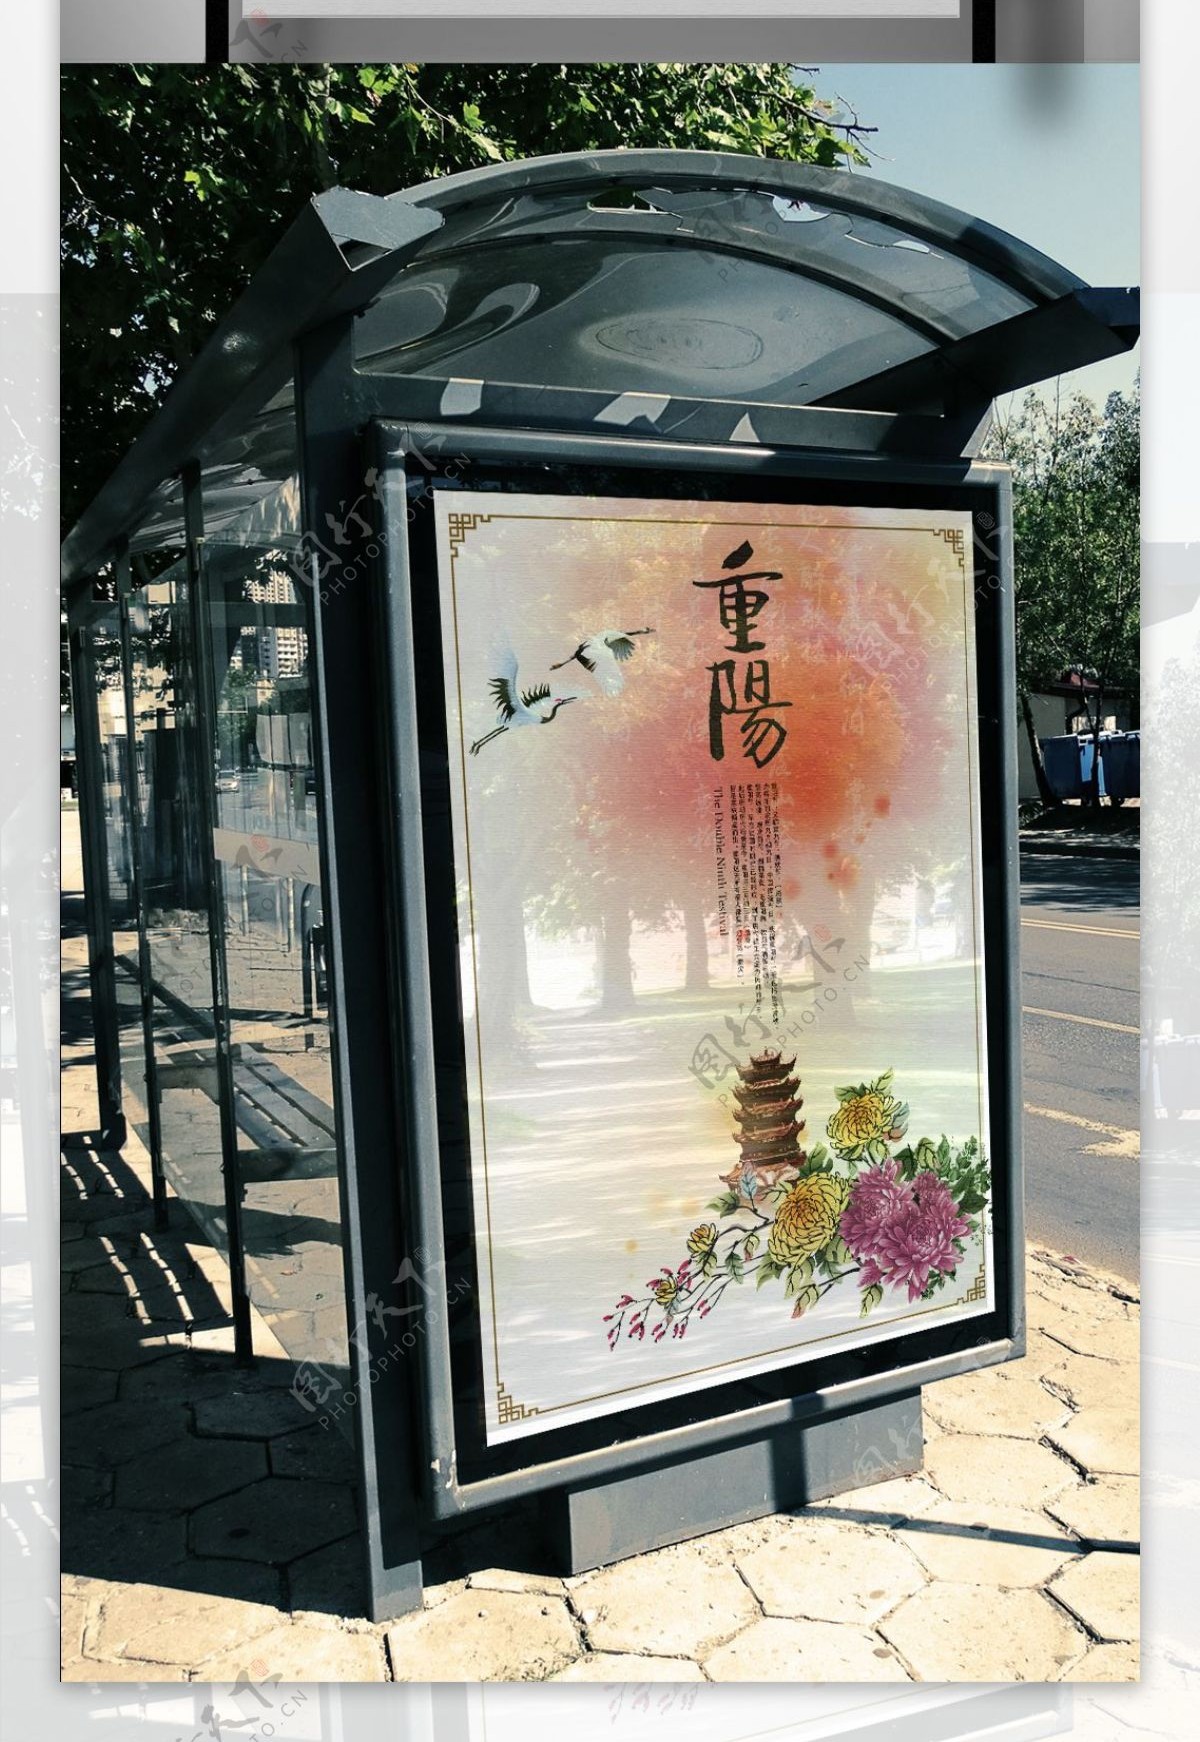 中国风重阳节海报设计模板